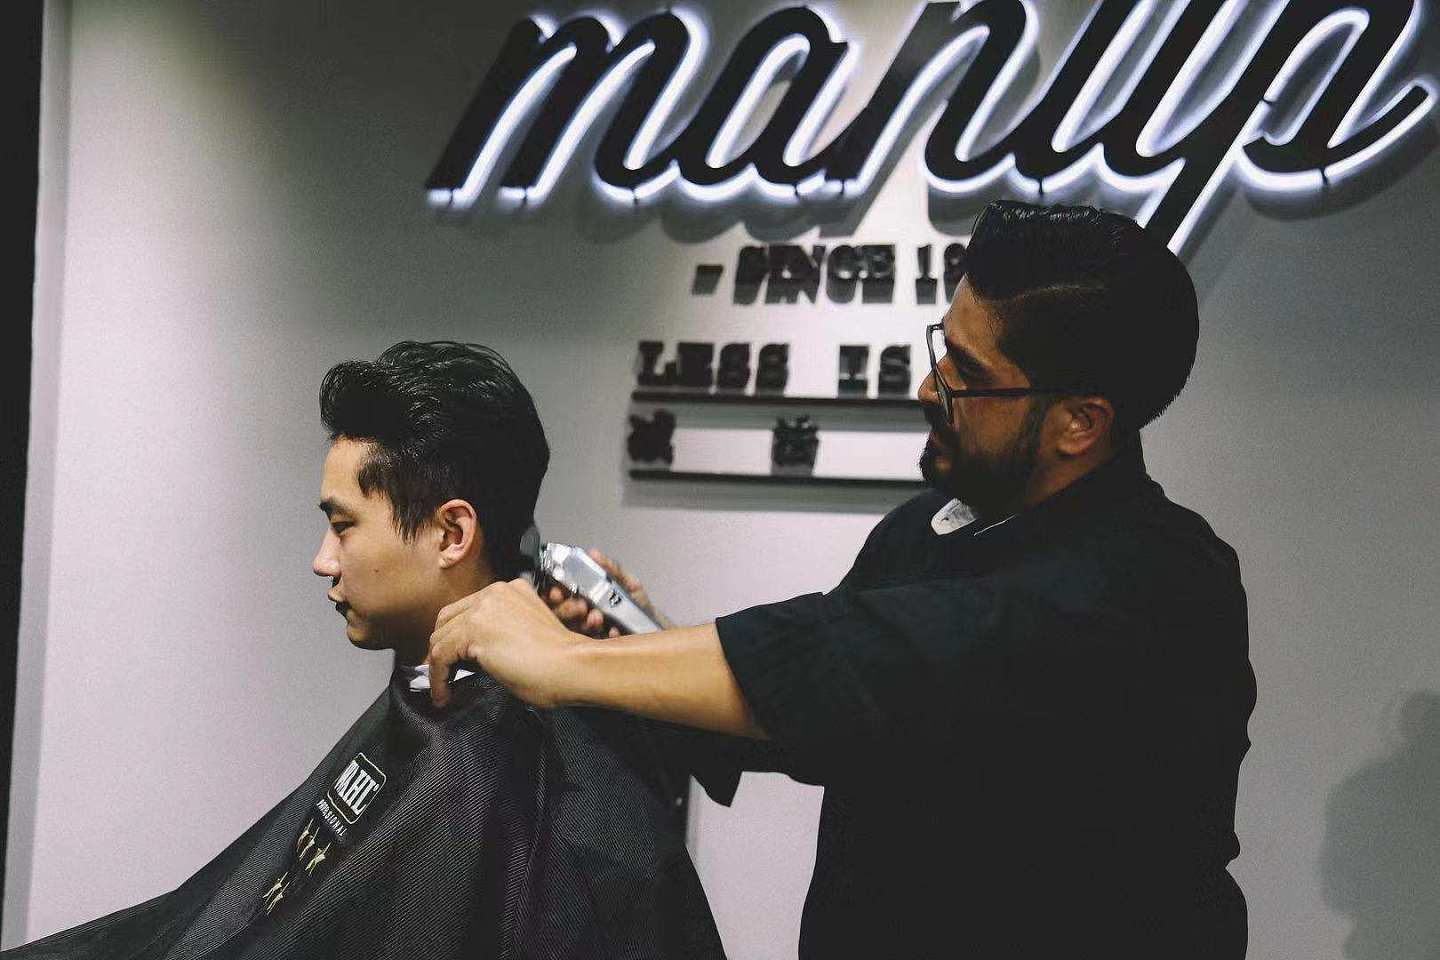 36氪首发 | 男士理容品牌「MANUP理派」完成种子轮融资，从Barbershop切入男士生活方式市场 - 1